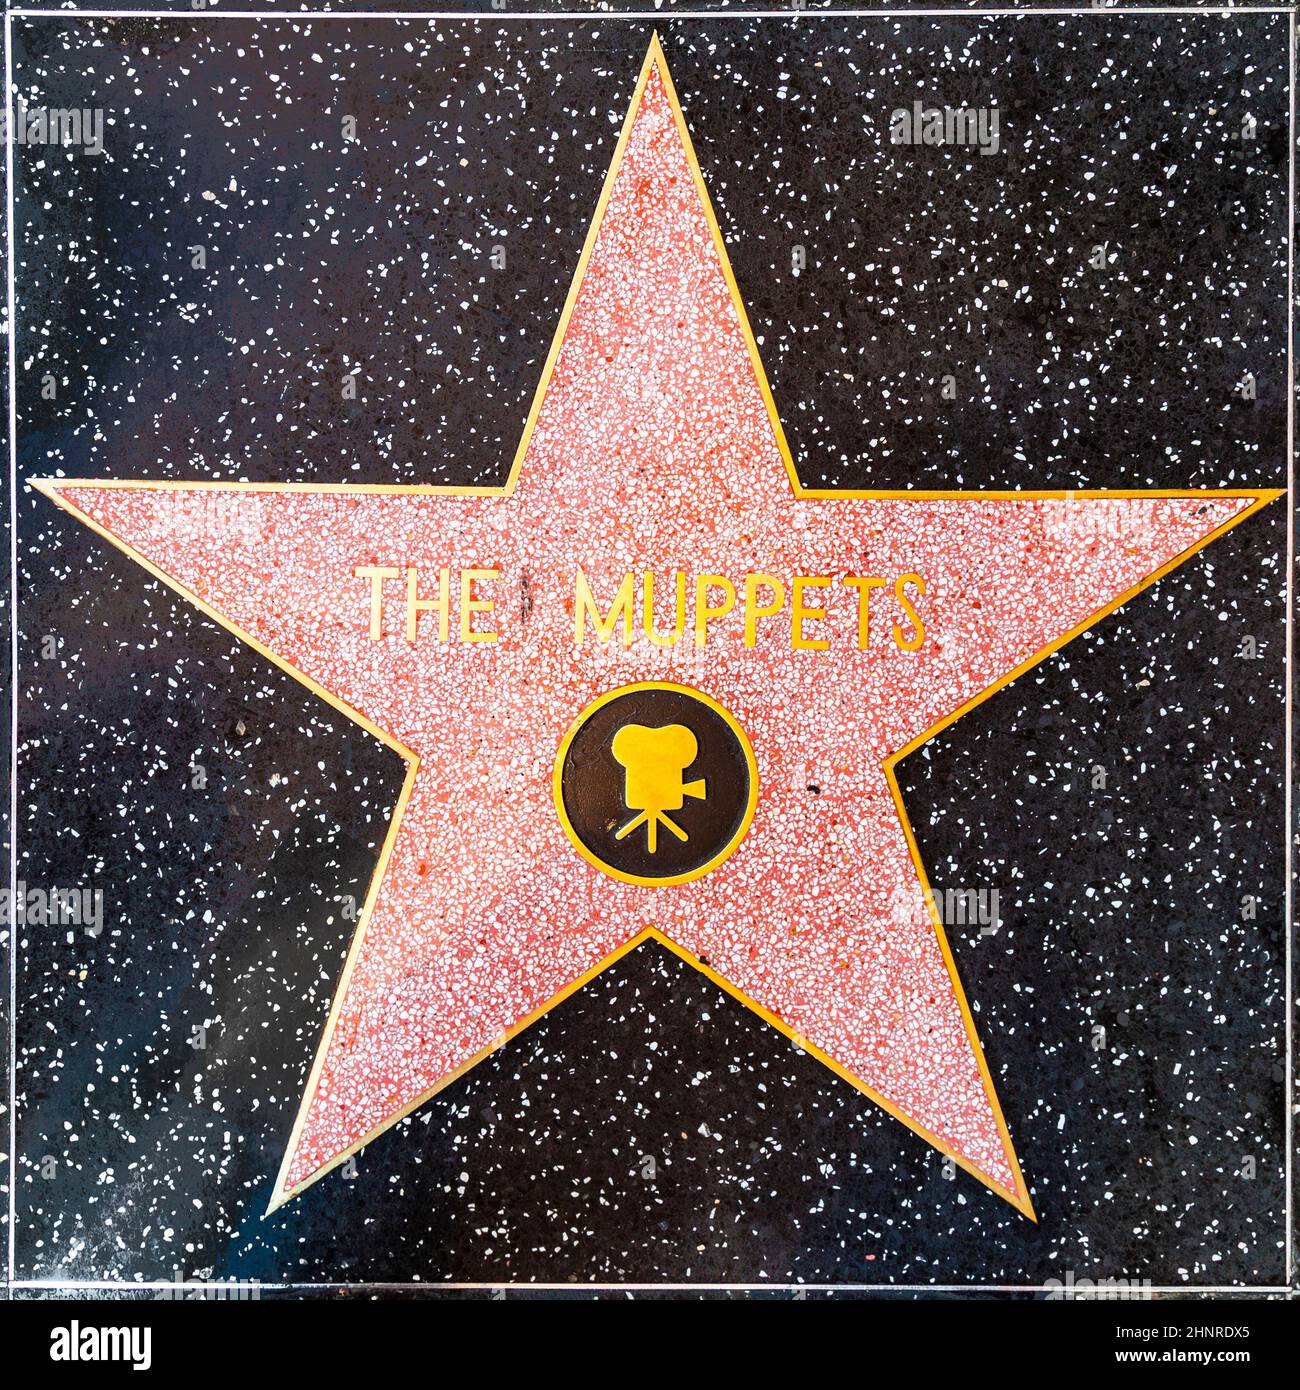 Die Muppets sind auf dem Hollywood Walk of Fame zu sehen Stockfoto